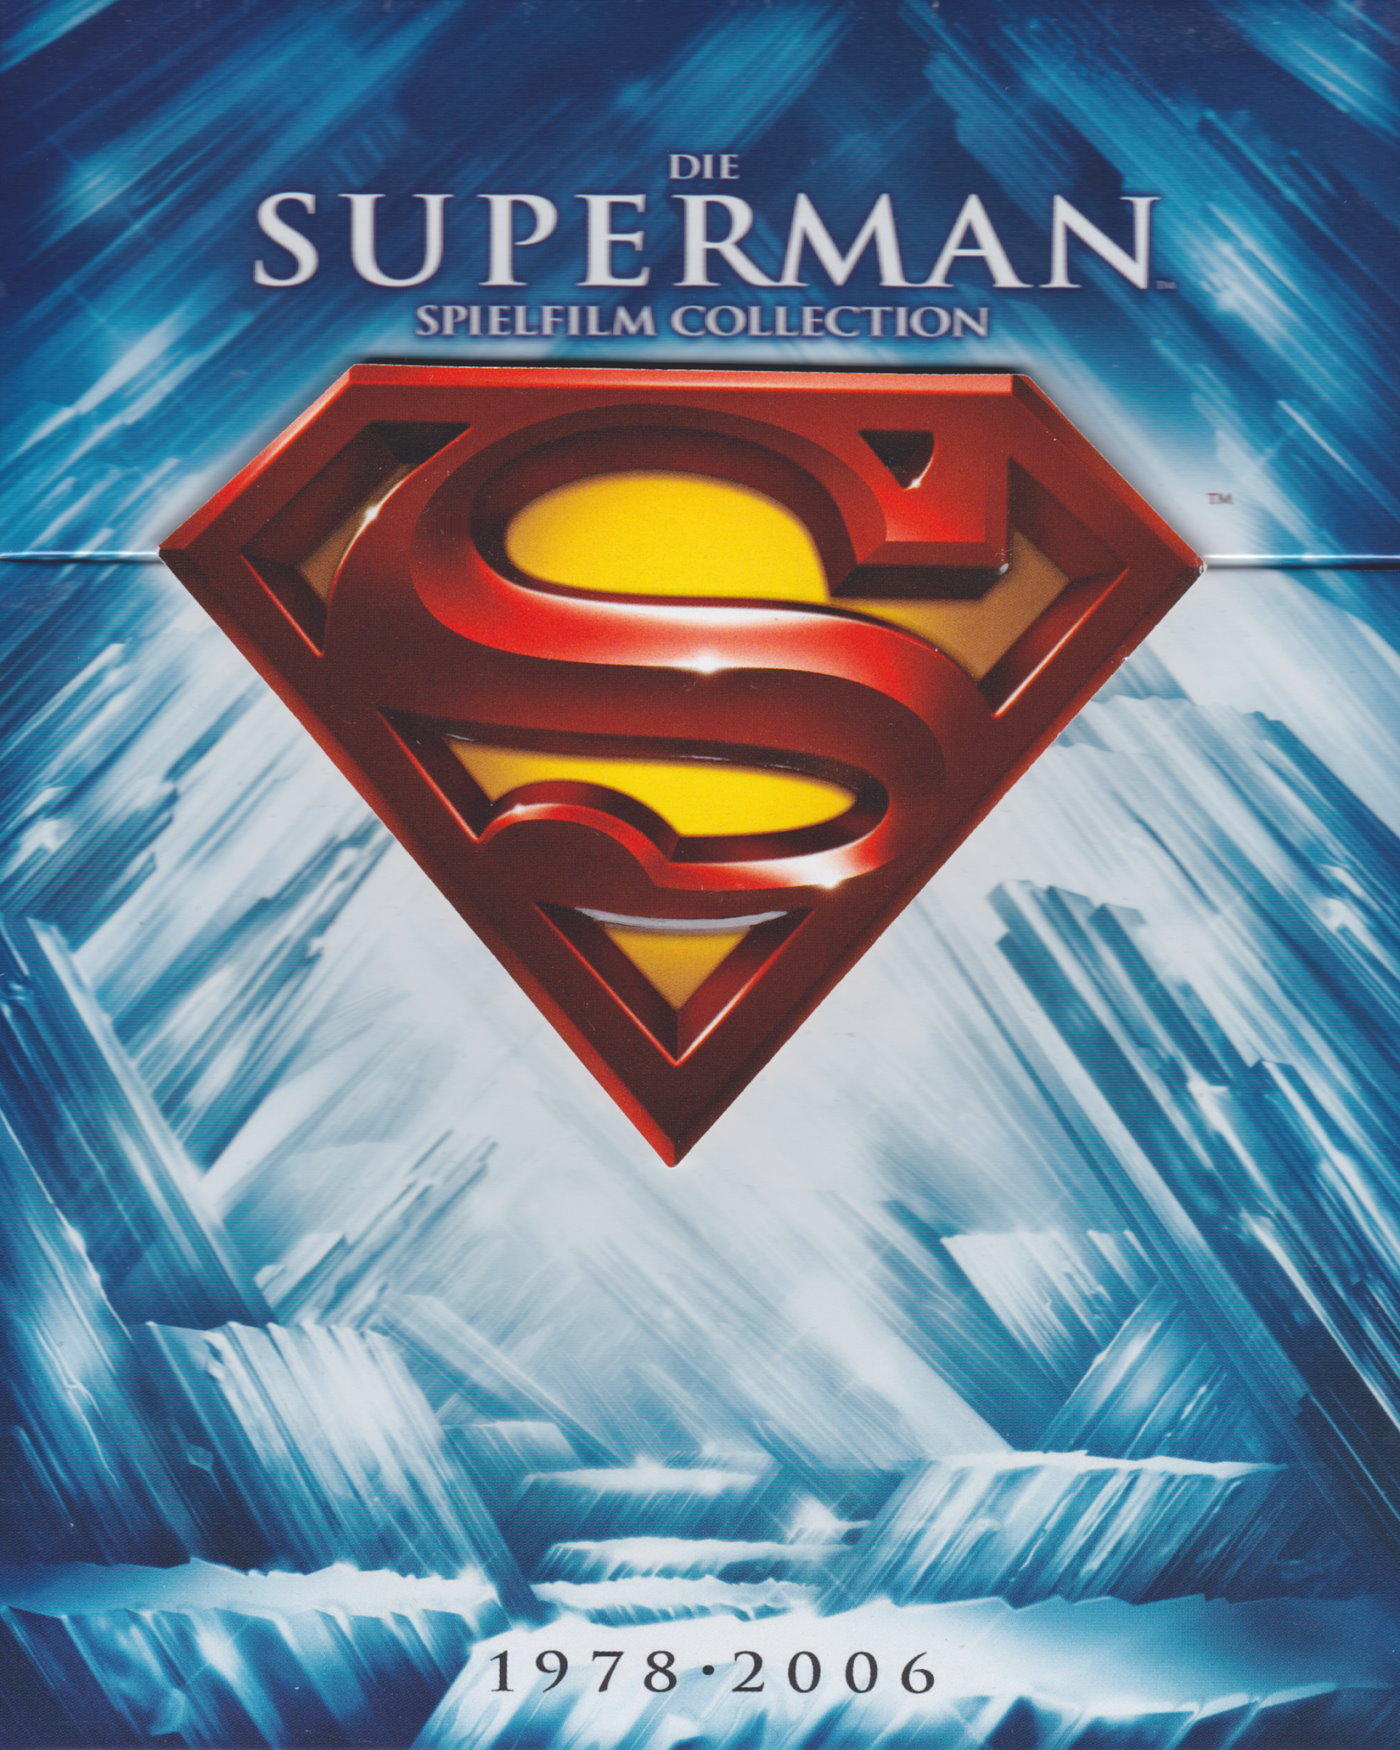 Cover - Superman IV - Die Welt am Abgrund.jpg